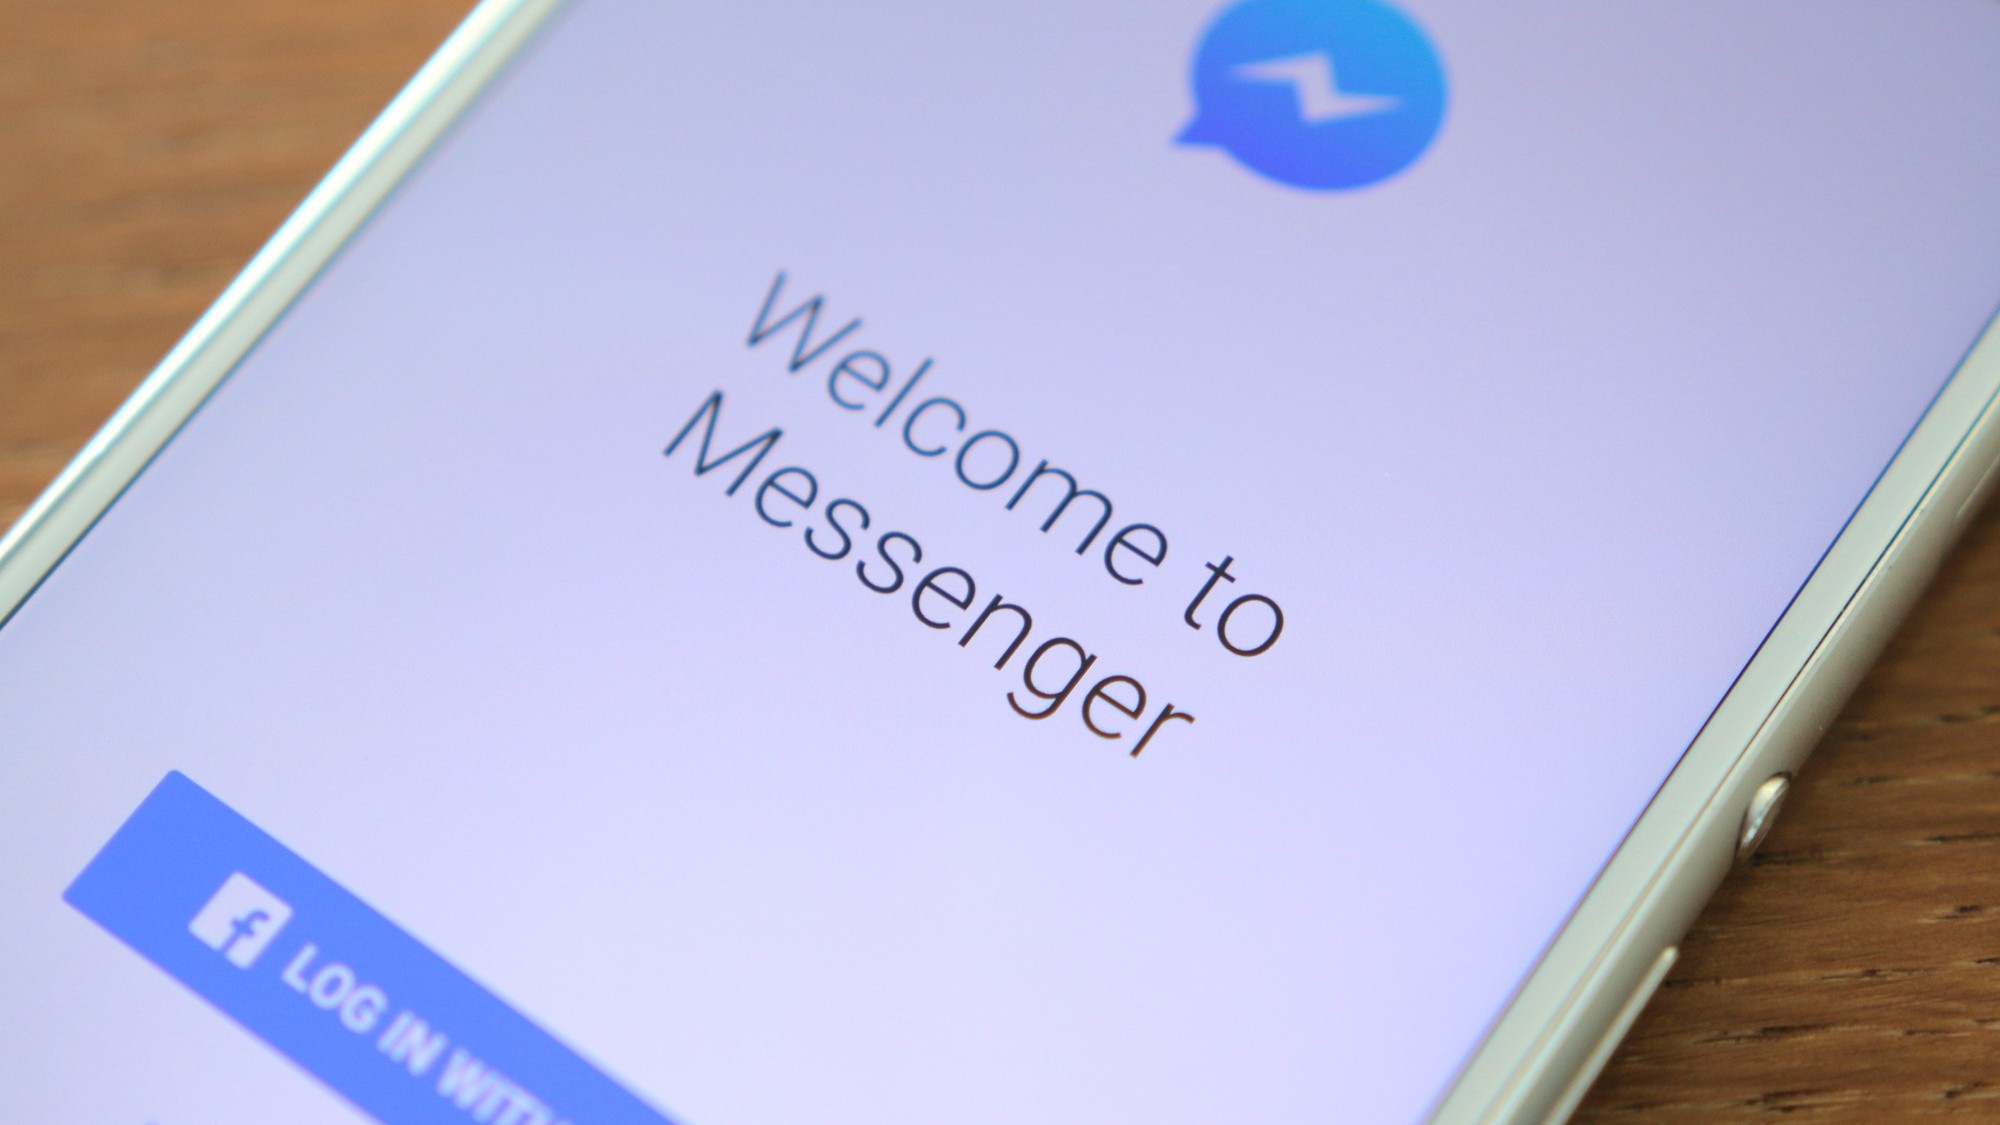 Cập nhật Messenger trên iOS sẽ gặp lỗi sập ứng dụng liên tục rất khó chịu, hãy cảnh giác! - Ảnh 1.